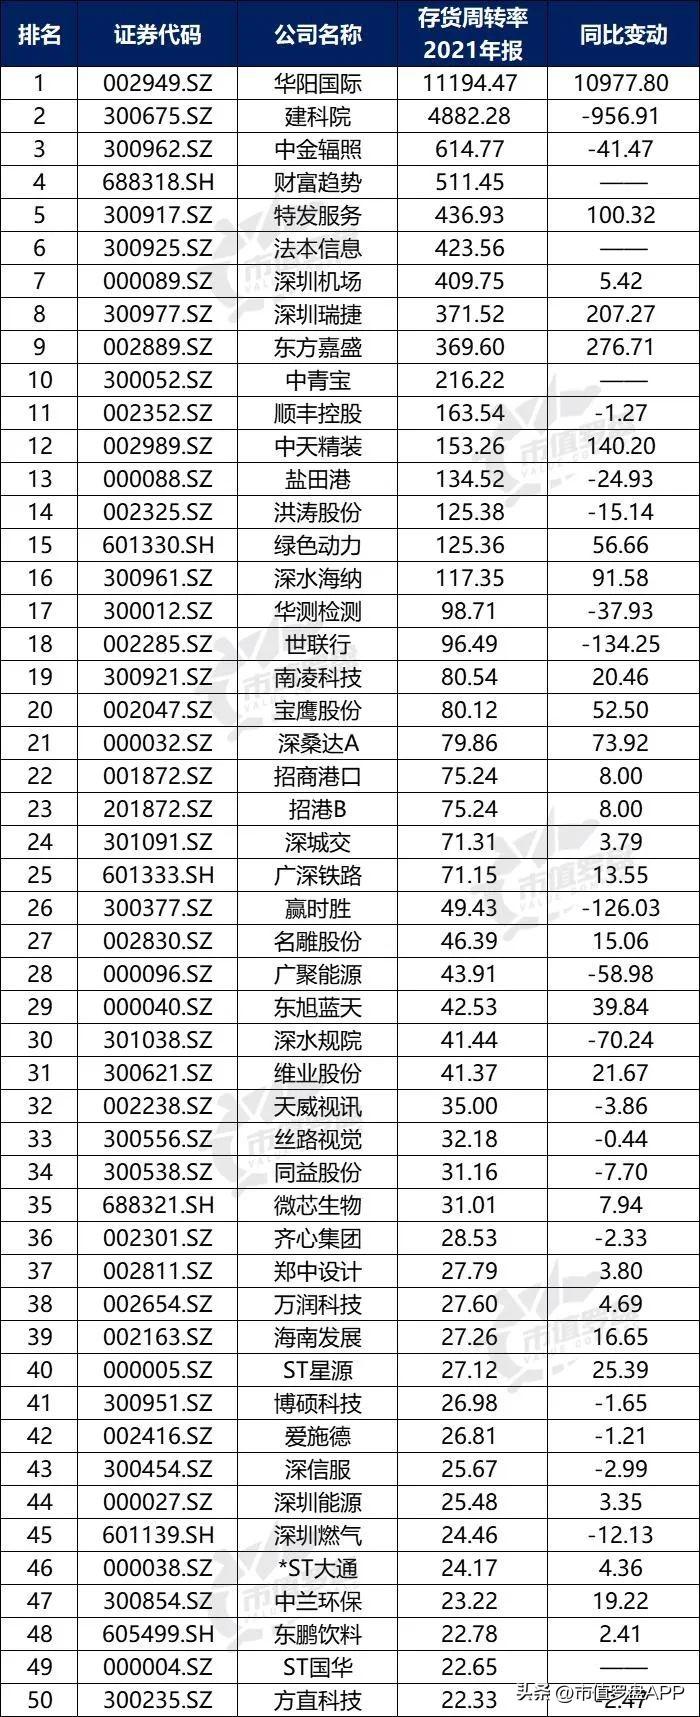 深圳财税公司服务排名,本月阐释